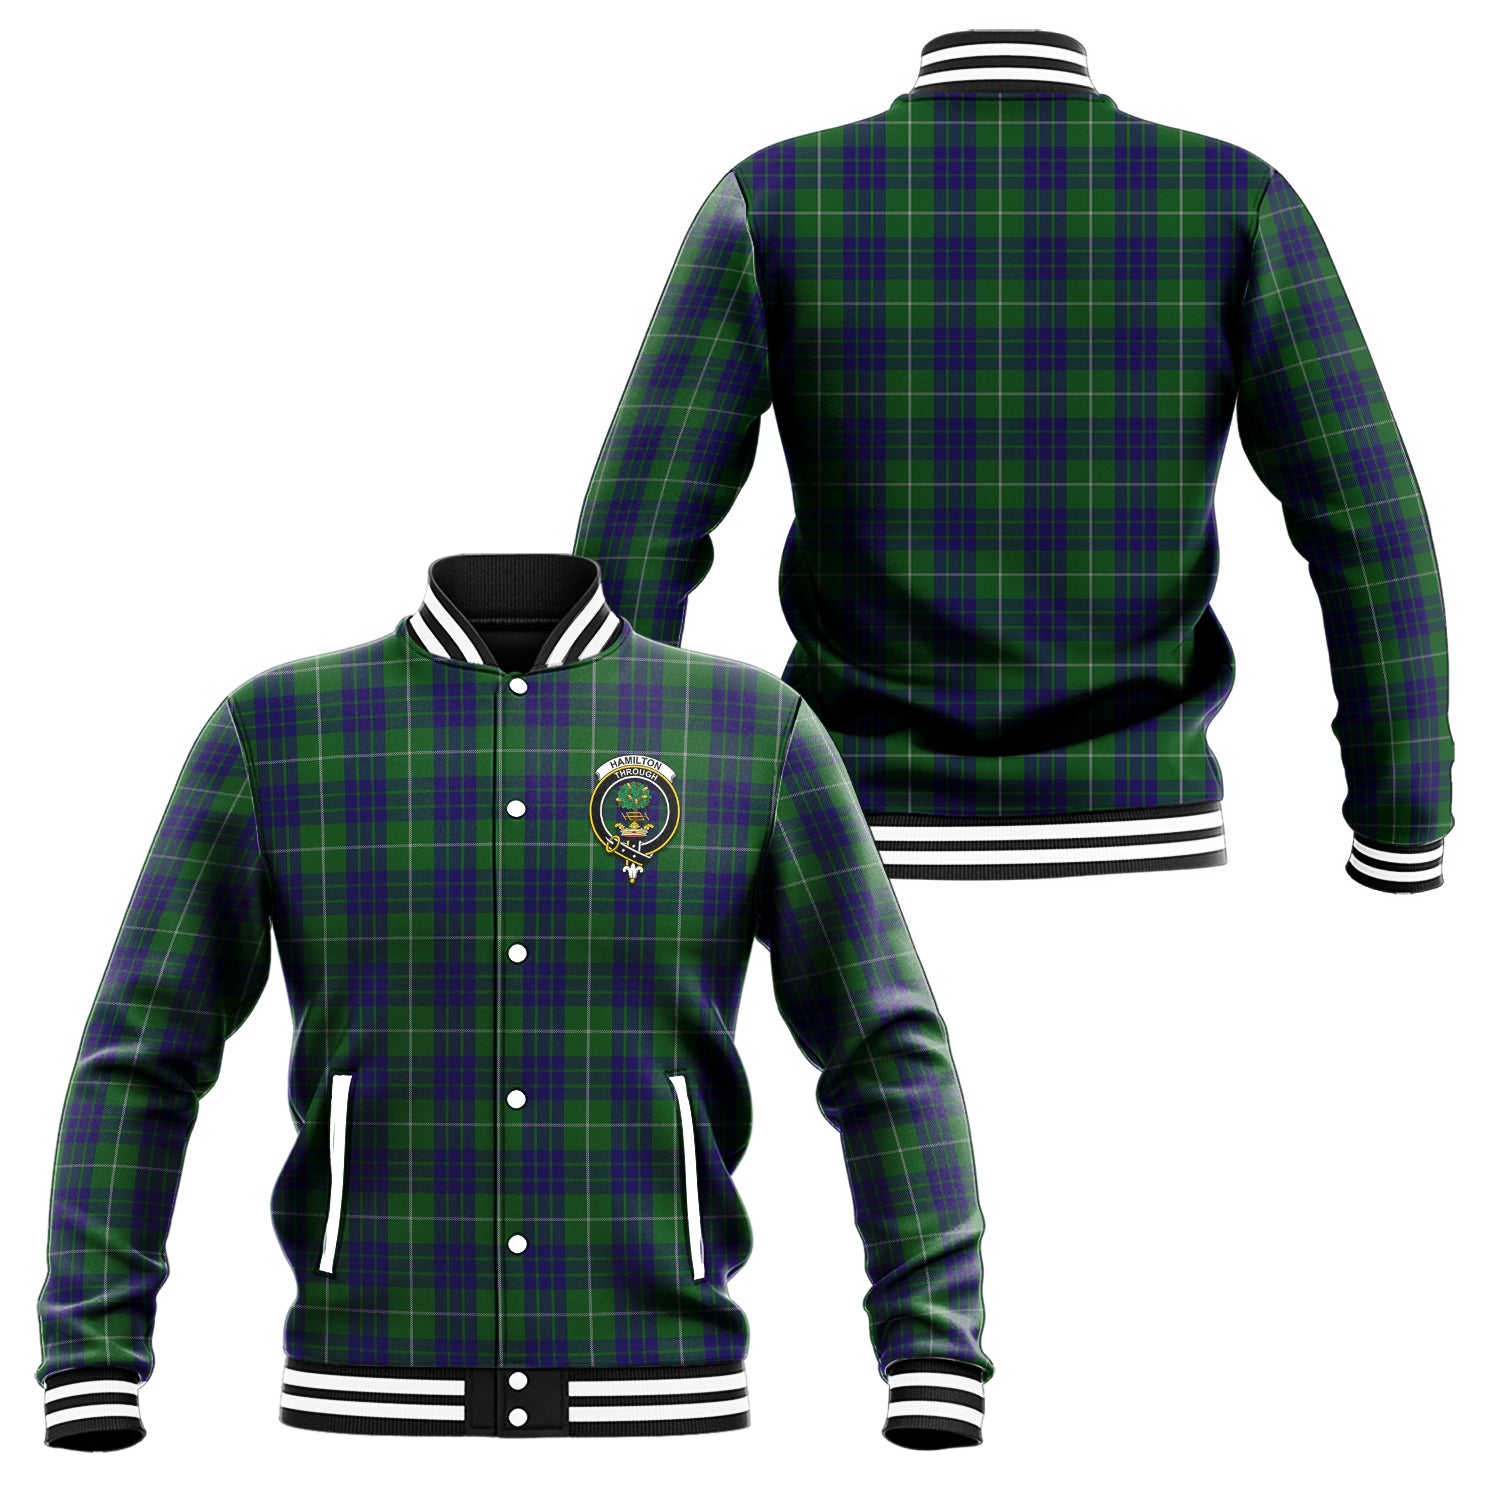 hamilton-green-hunting-tartan-baseball-jacket-with-family-crest